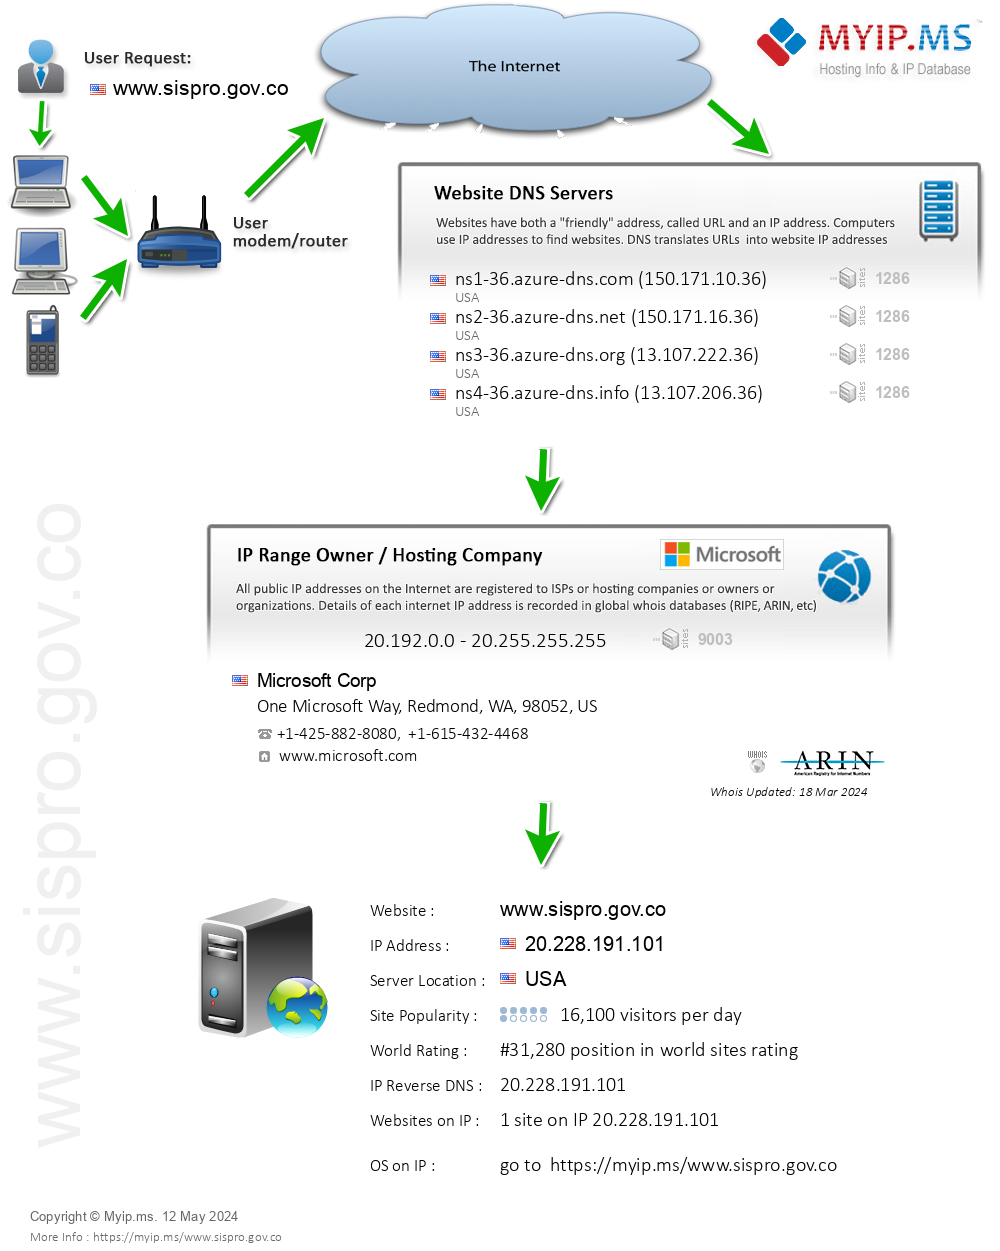 Sispro.gov.co - Website Hosting Visual IP Diagram